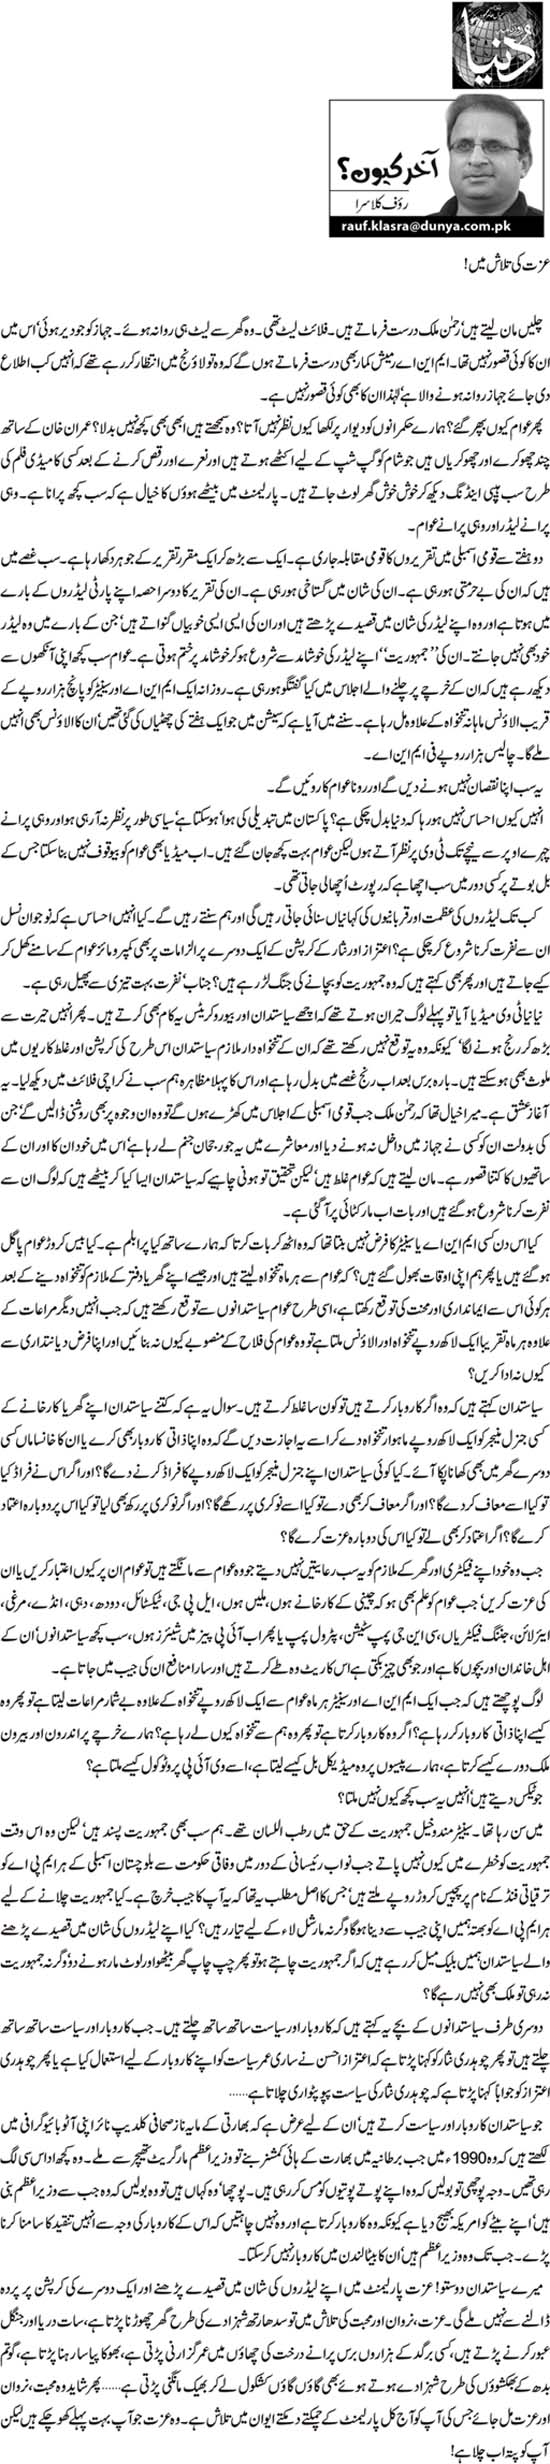 Minhaj-ul-Quran  Print Media Coverage Daily Dunya Article (Rauf Klasra)